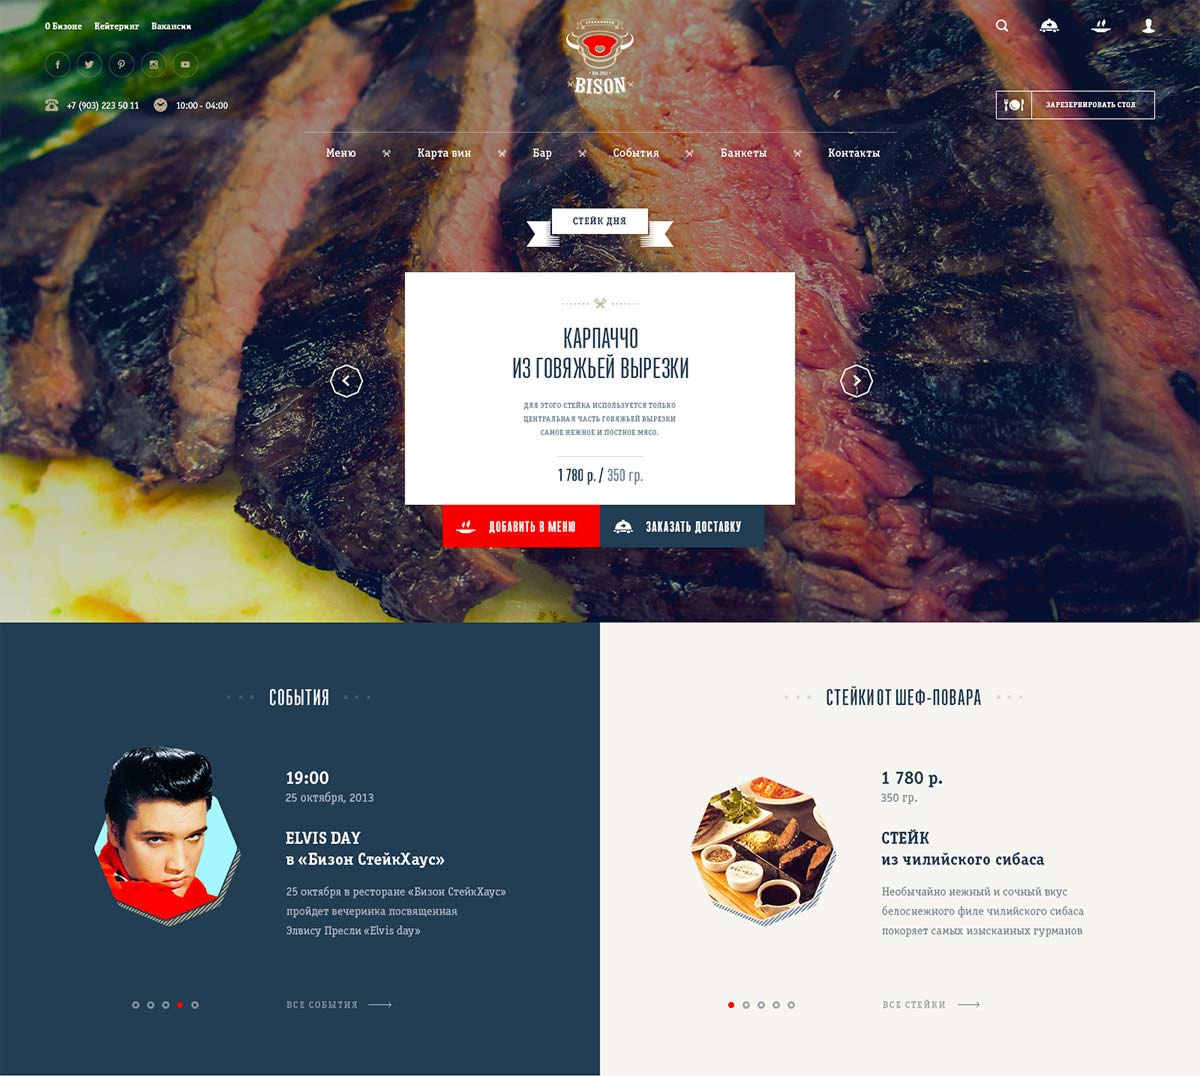 Дизайн главной страницы сайта мясного ресторана Bison Steakhouse.